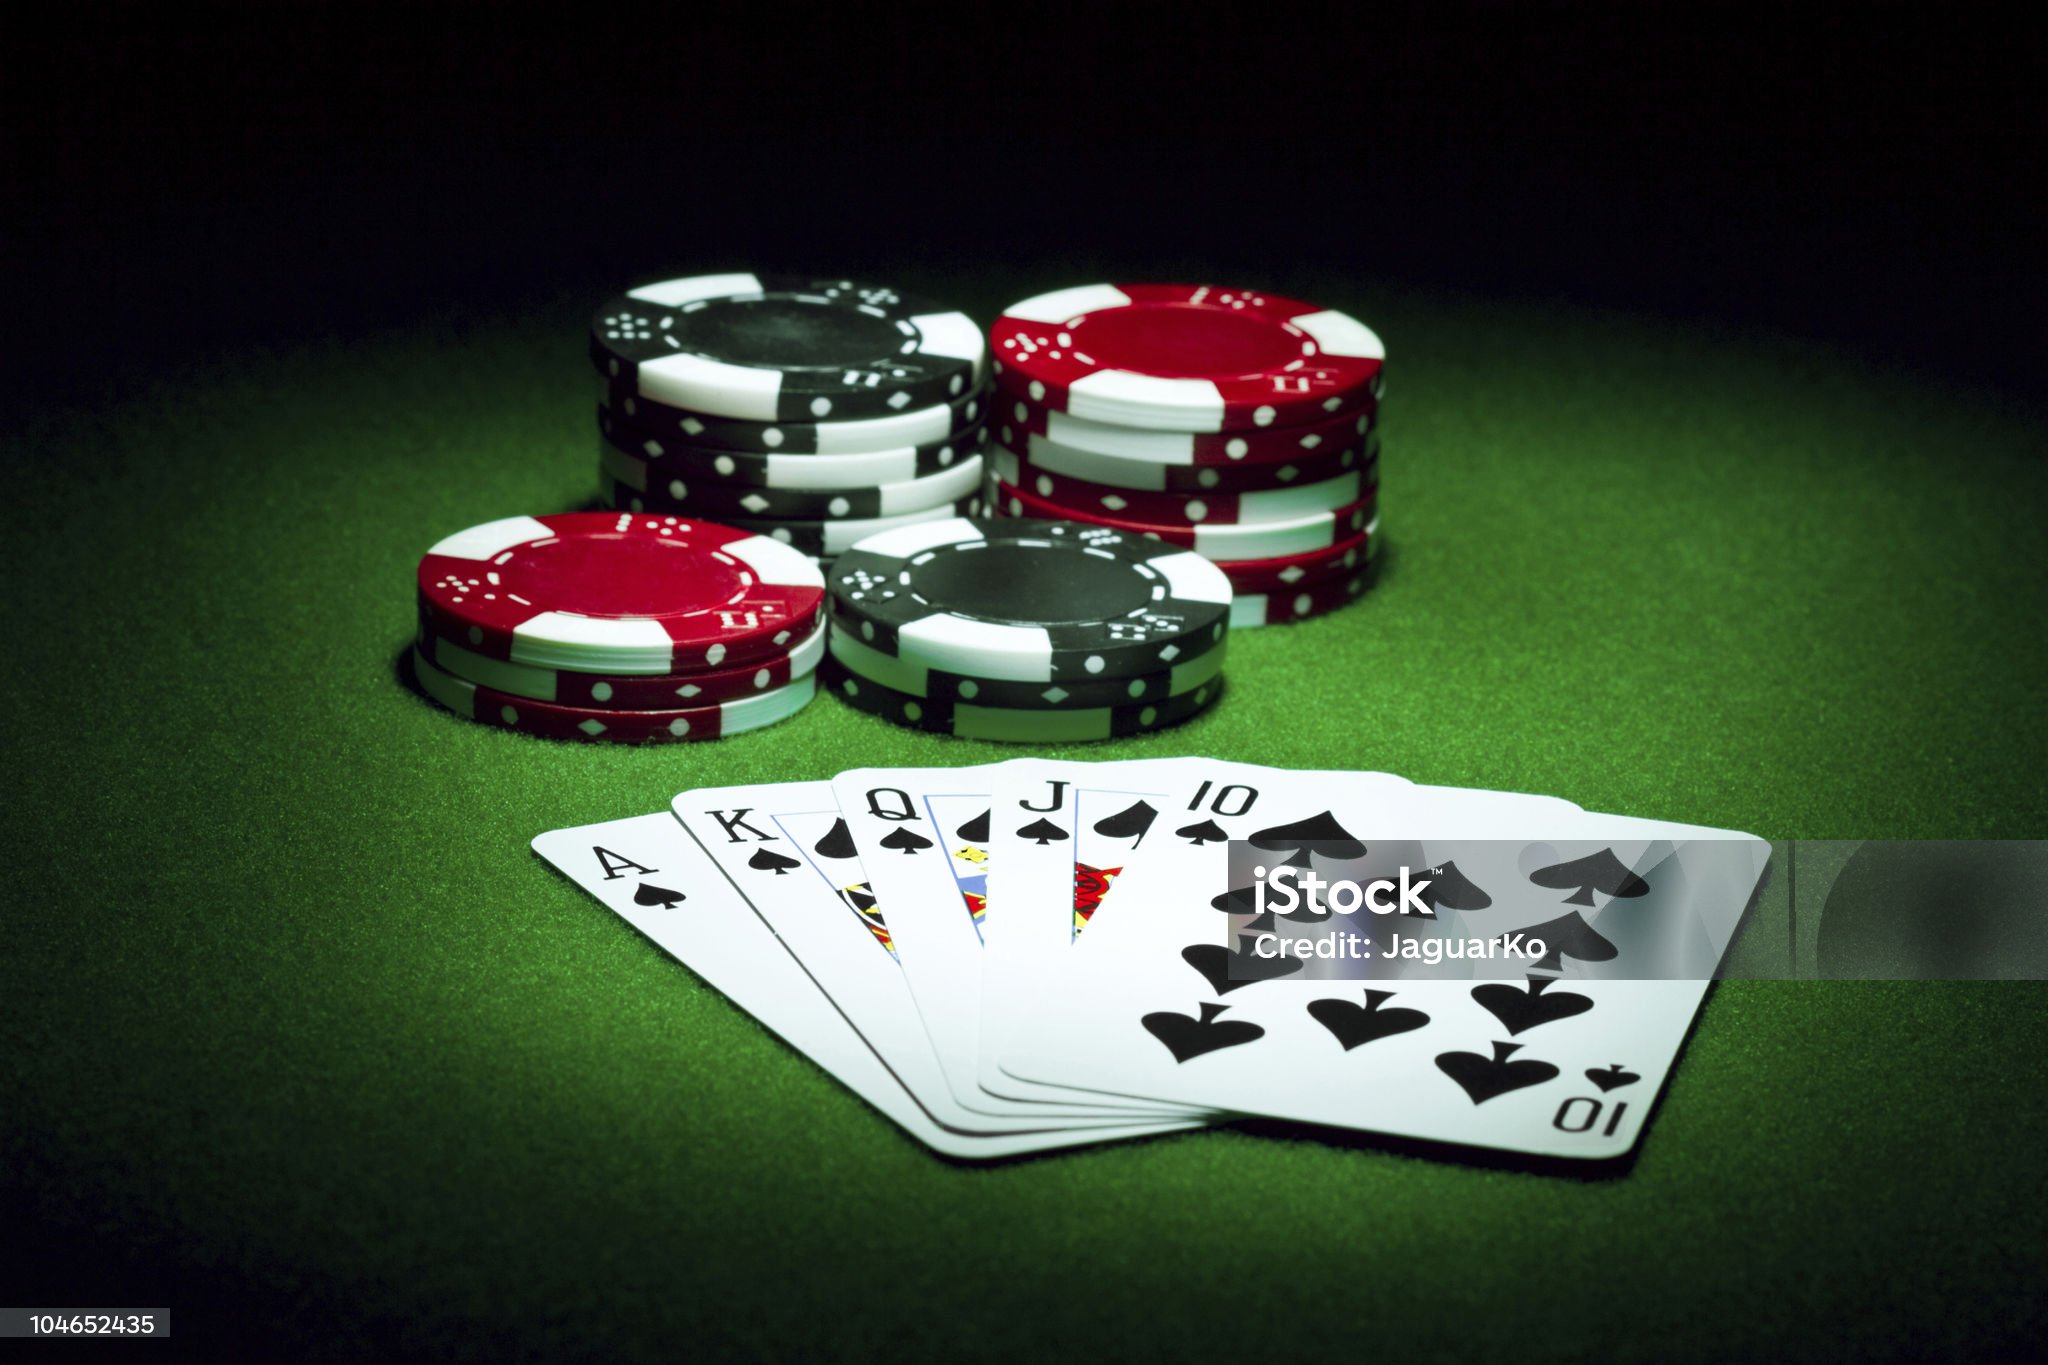 Комбинации карт в покере